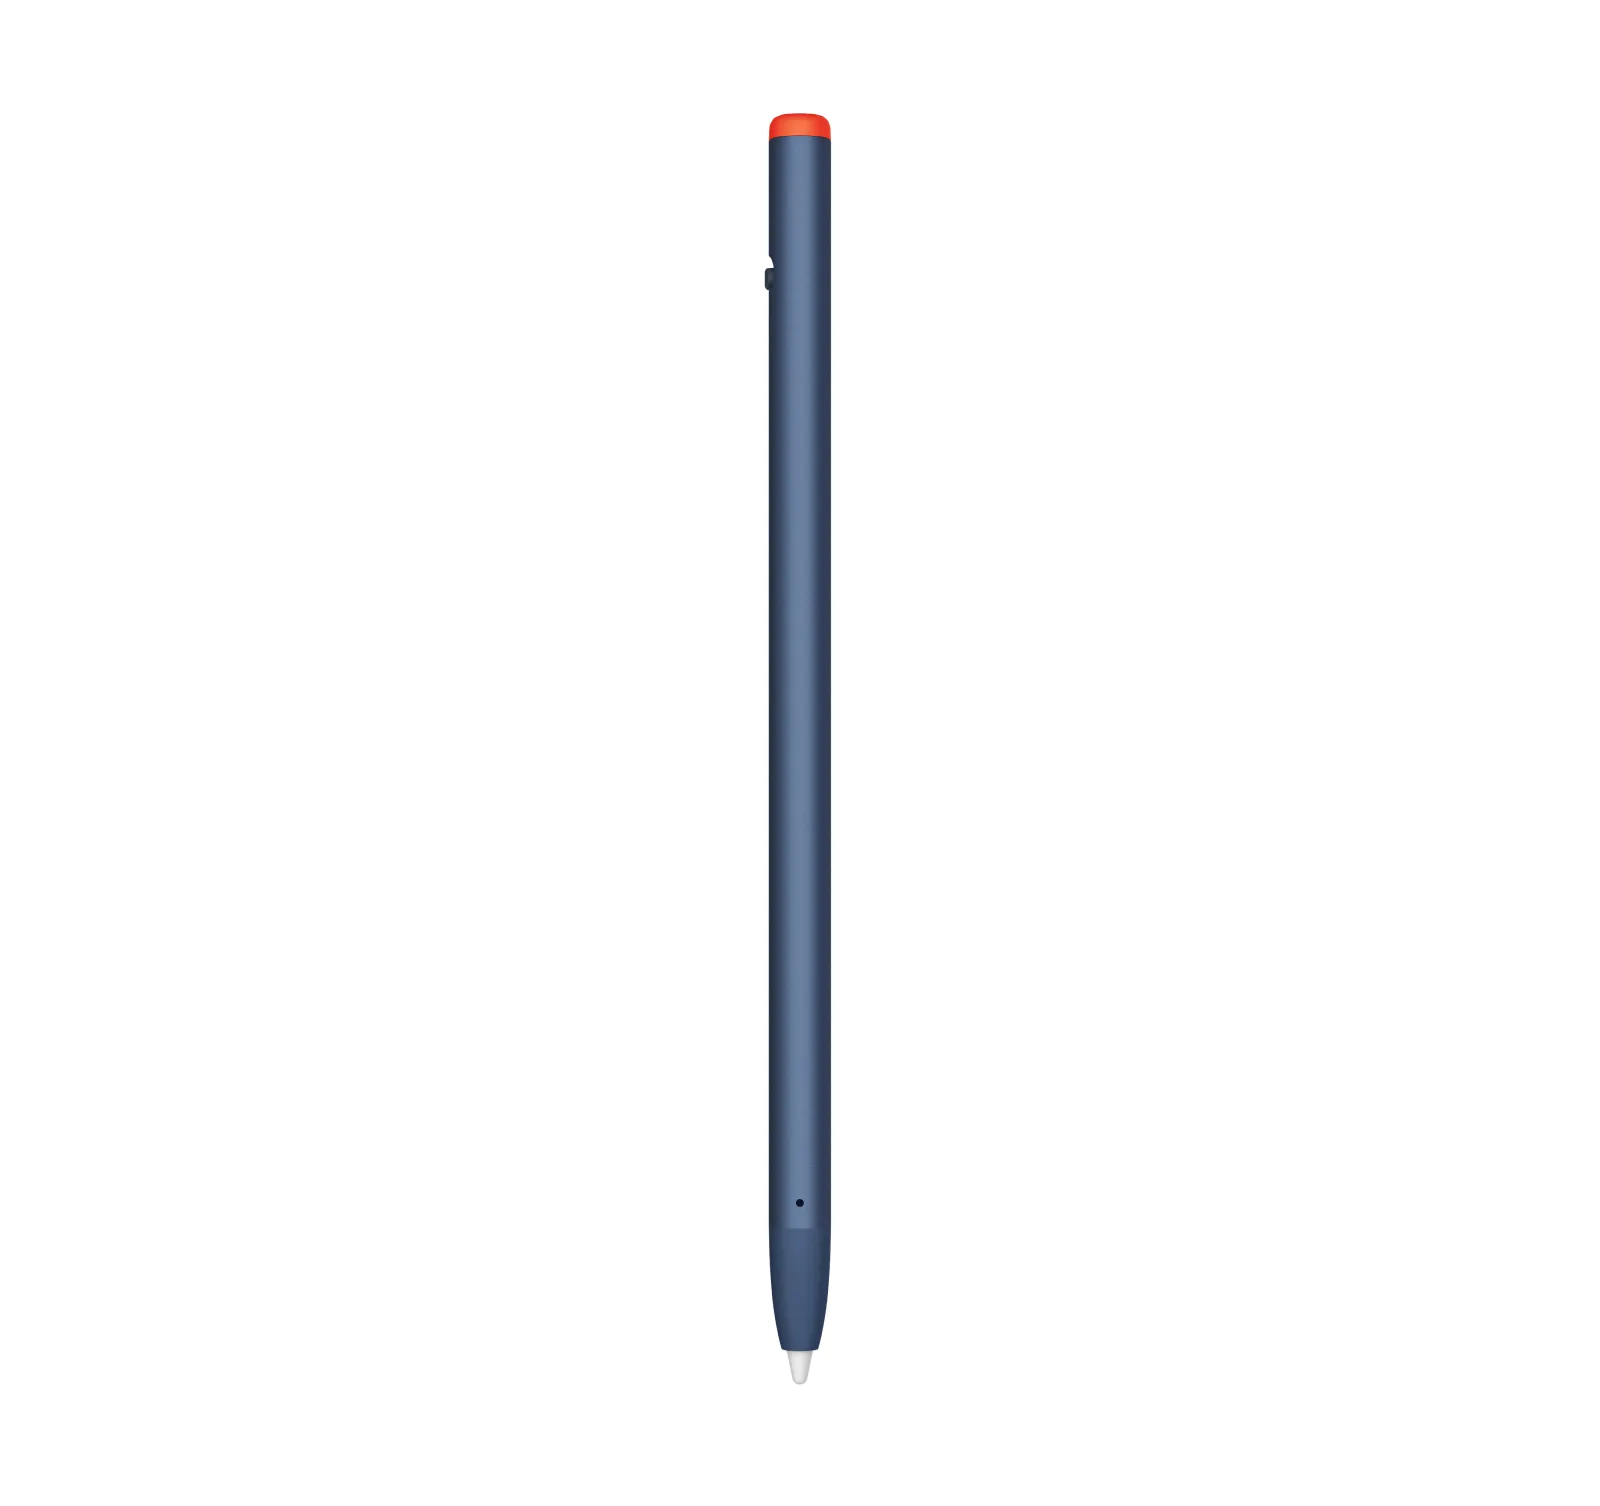 Vente LOGITECH Crayon for Education Digital pen wireless Logitech au meilleur prix - visuel 4